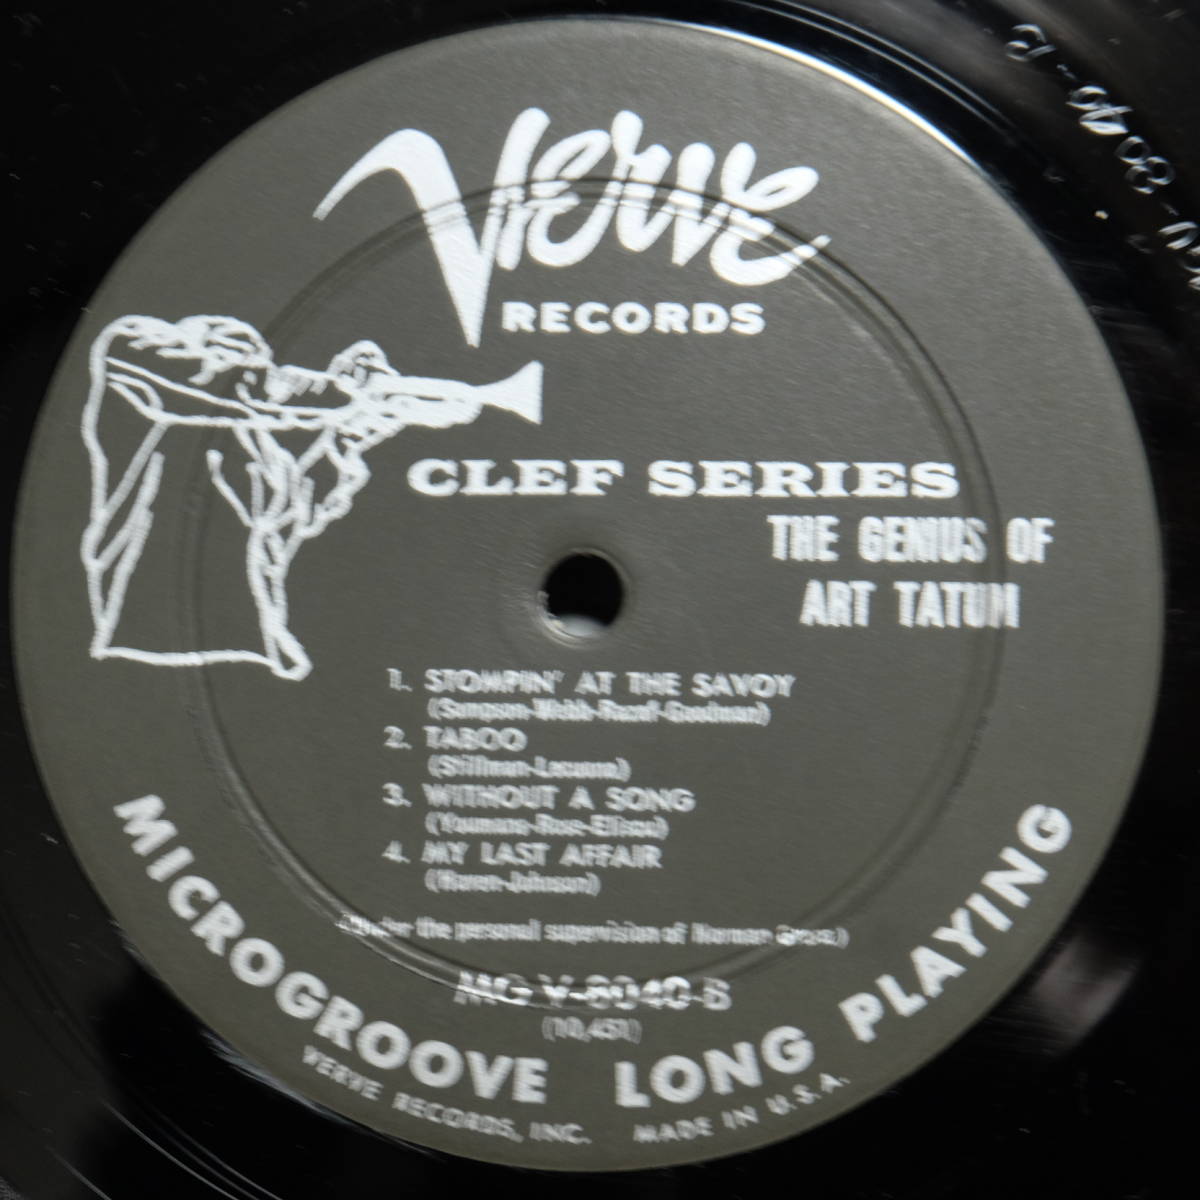 Verve【 MGV-8040 : The Genius Of Art Tatum #5 】DG_画像3